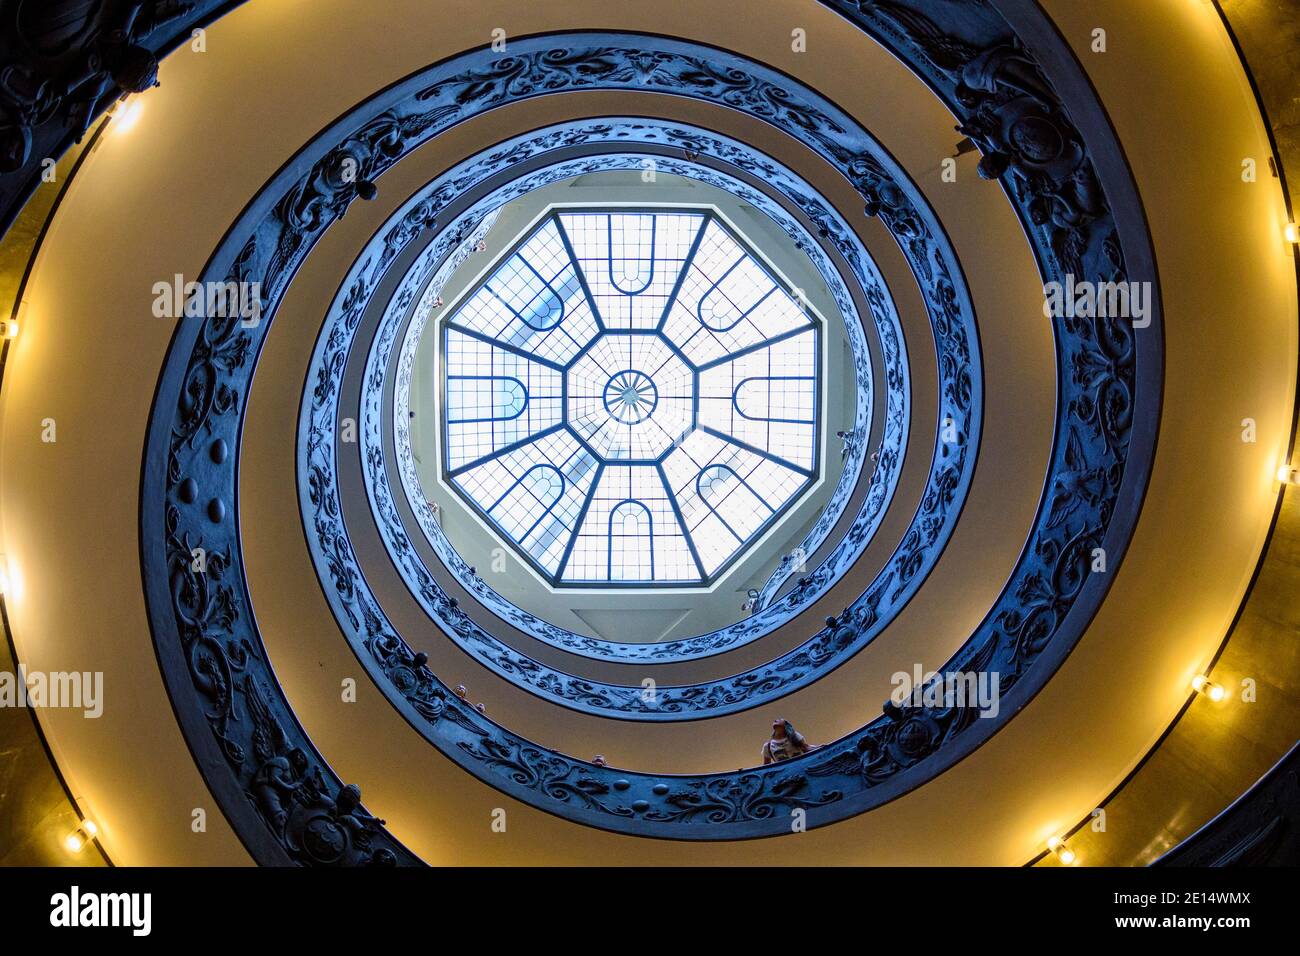 Roma. Italia. La moderna escalera de caracol Bramante (1932) en los Museos Vaticanos, vista desde abajo hacia arriba. La escalera de doble hélice estaba desig Foto de stock